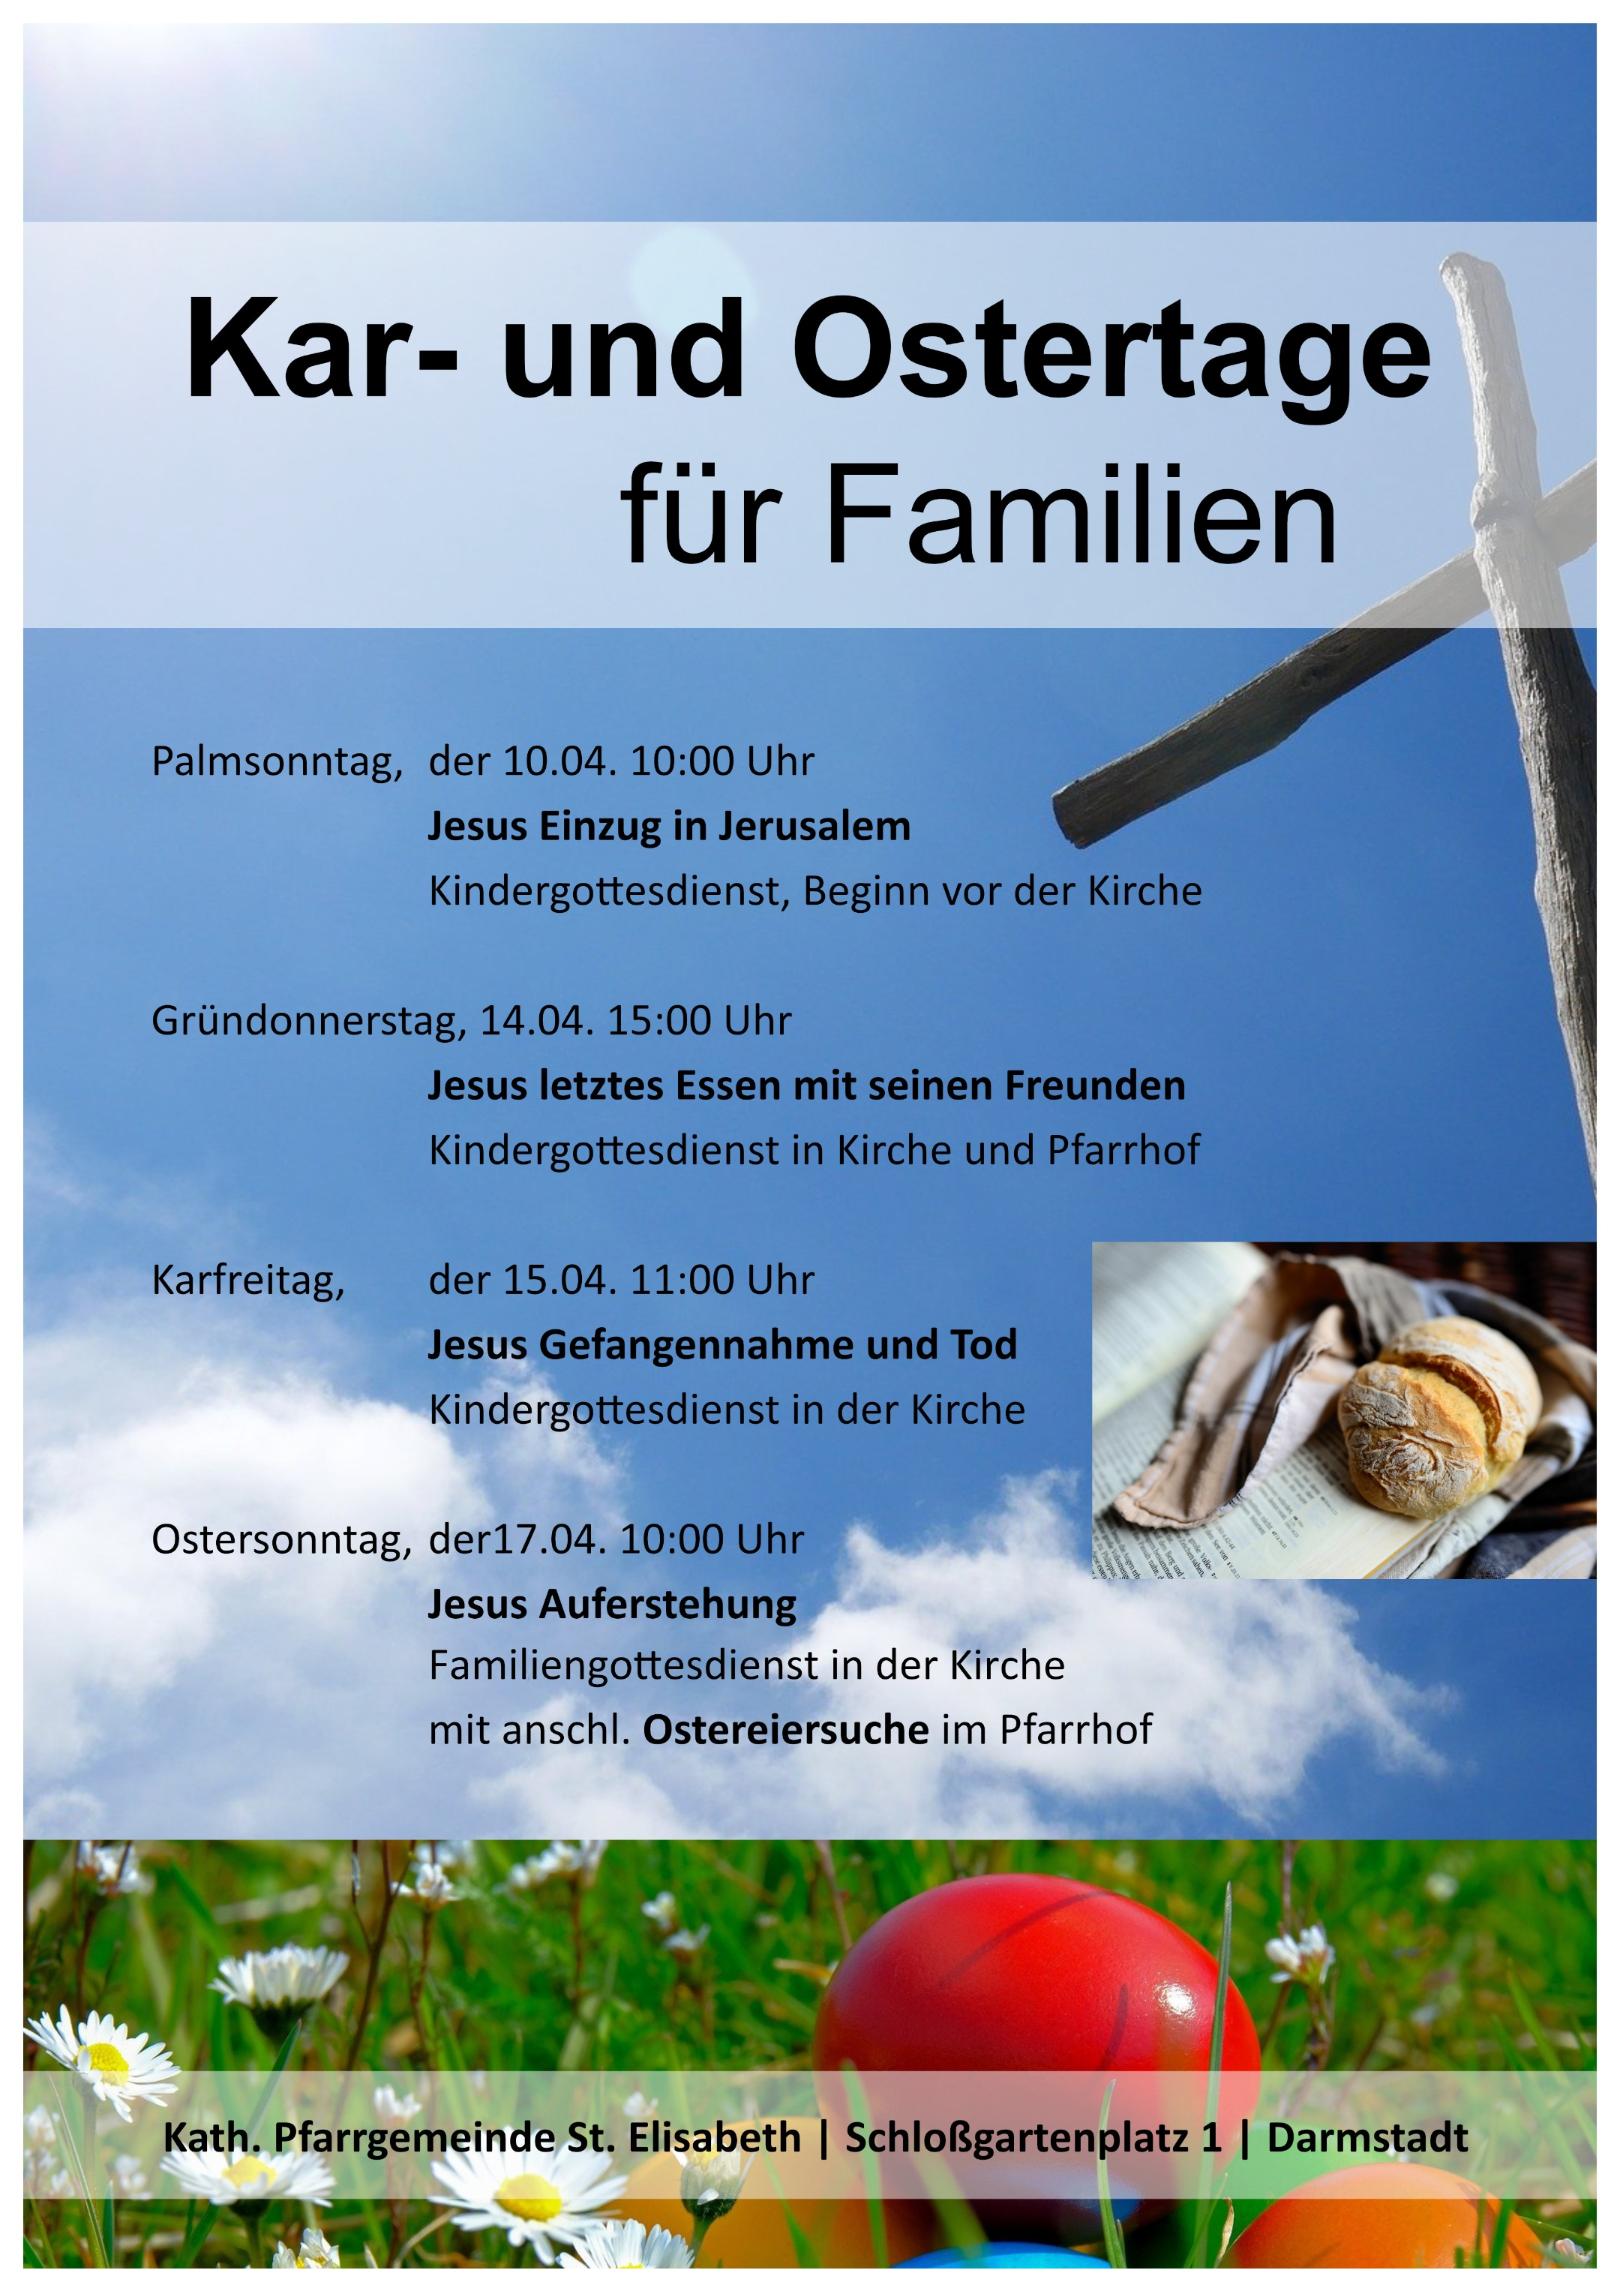 Kar- und Ostertage für Familien (c) Dominique Humm